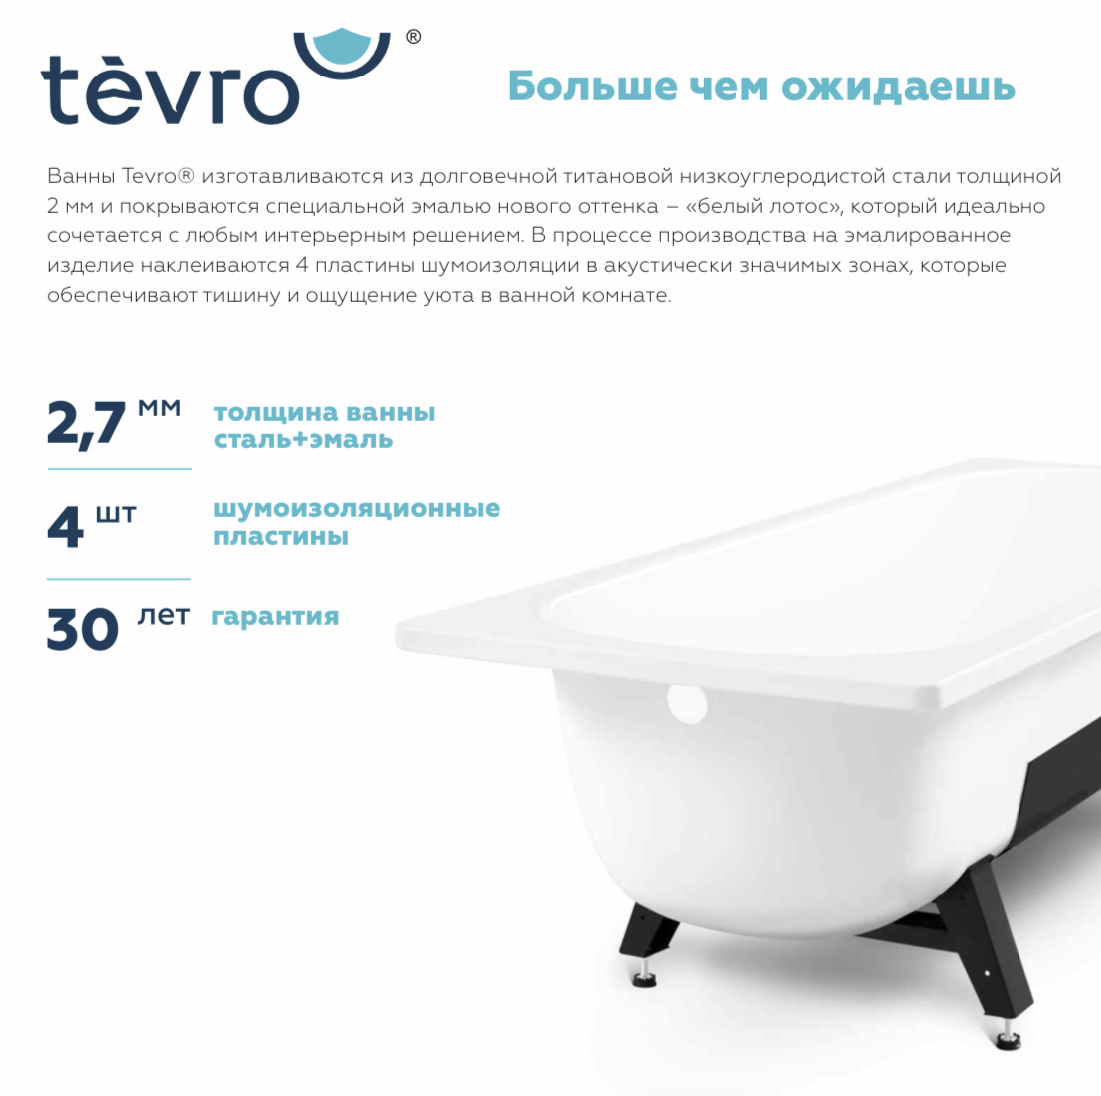 Ванна Tevro сталь 2.7 мм 150х70х40 белый Лотос. Ванна стальная Tevro 150x70x40 с шумоизоляцией и опорной подставкой. Ванна стальная 170*70 Tevro. Ванна Reimar 170x70 сталь.